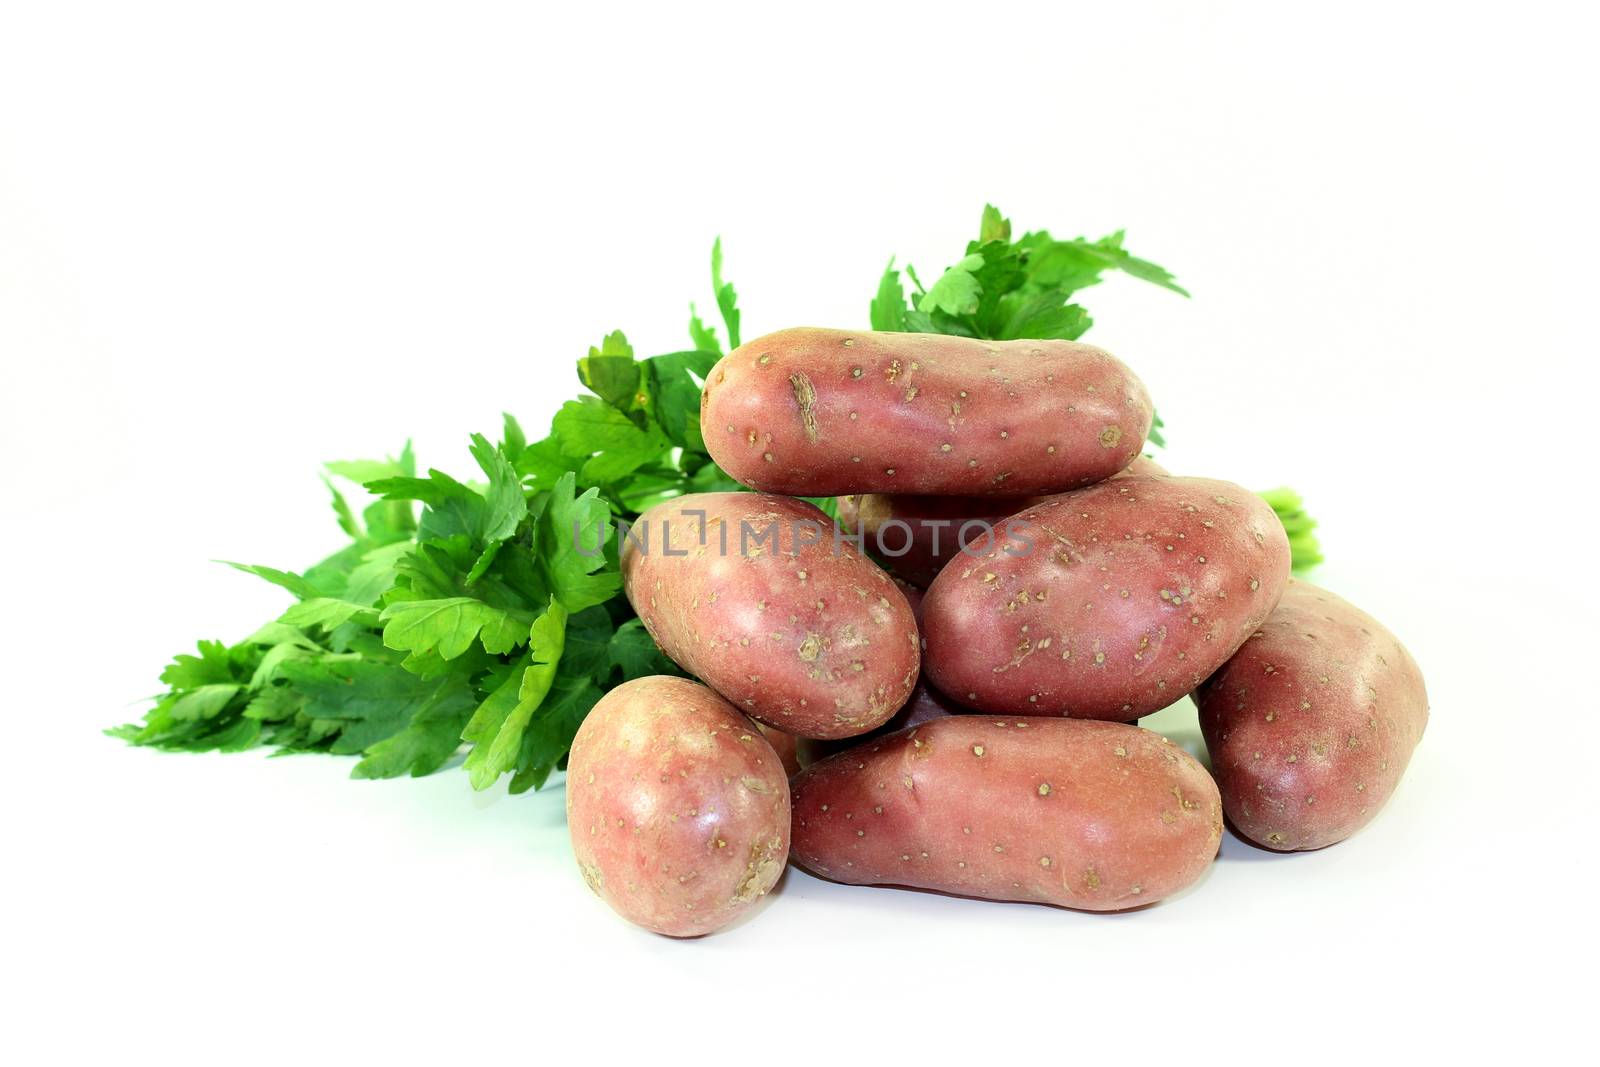 potatoes by silencefoto